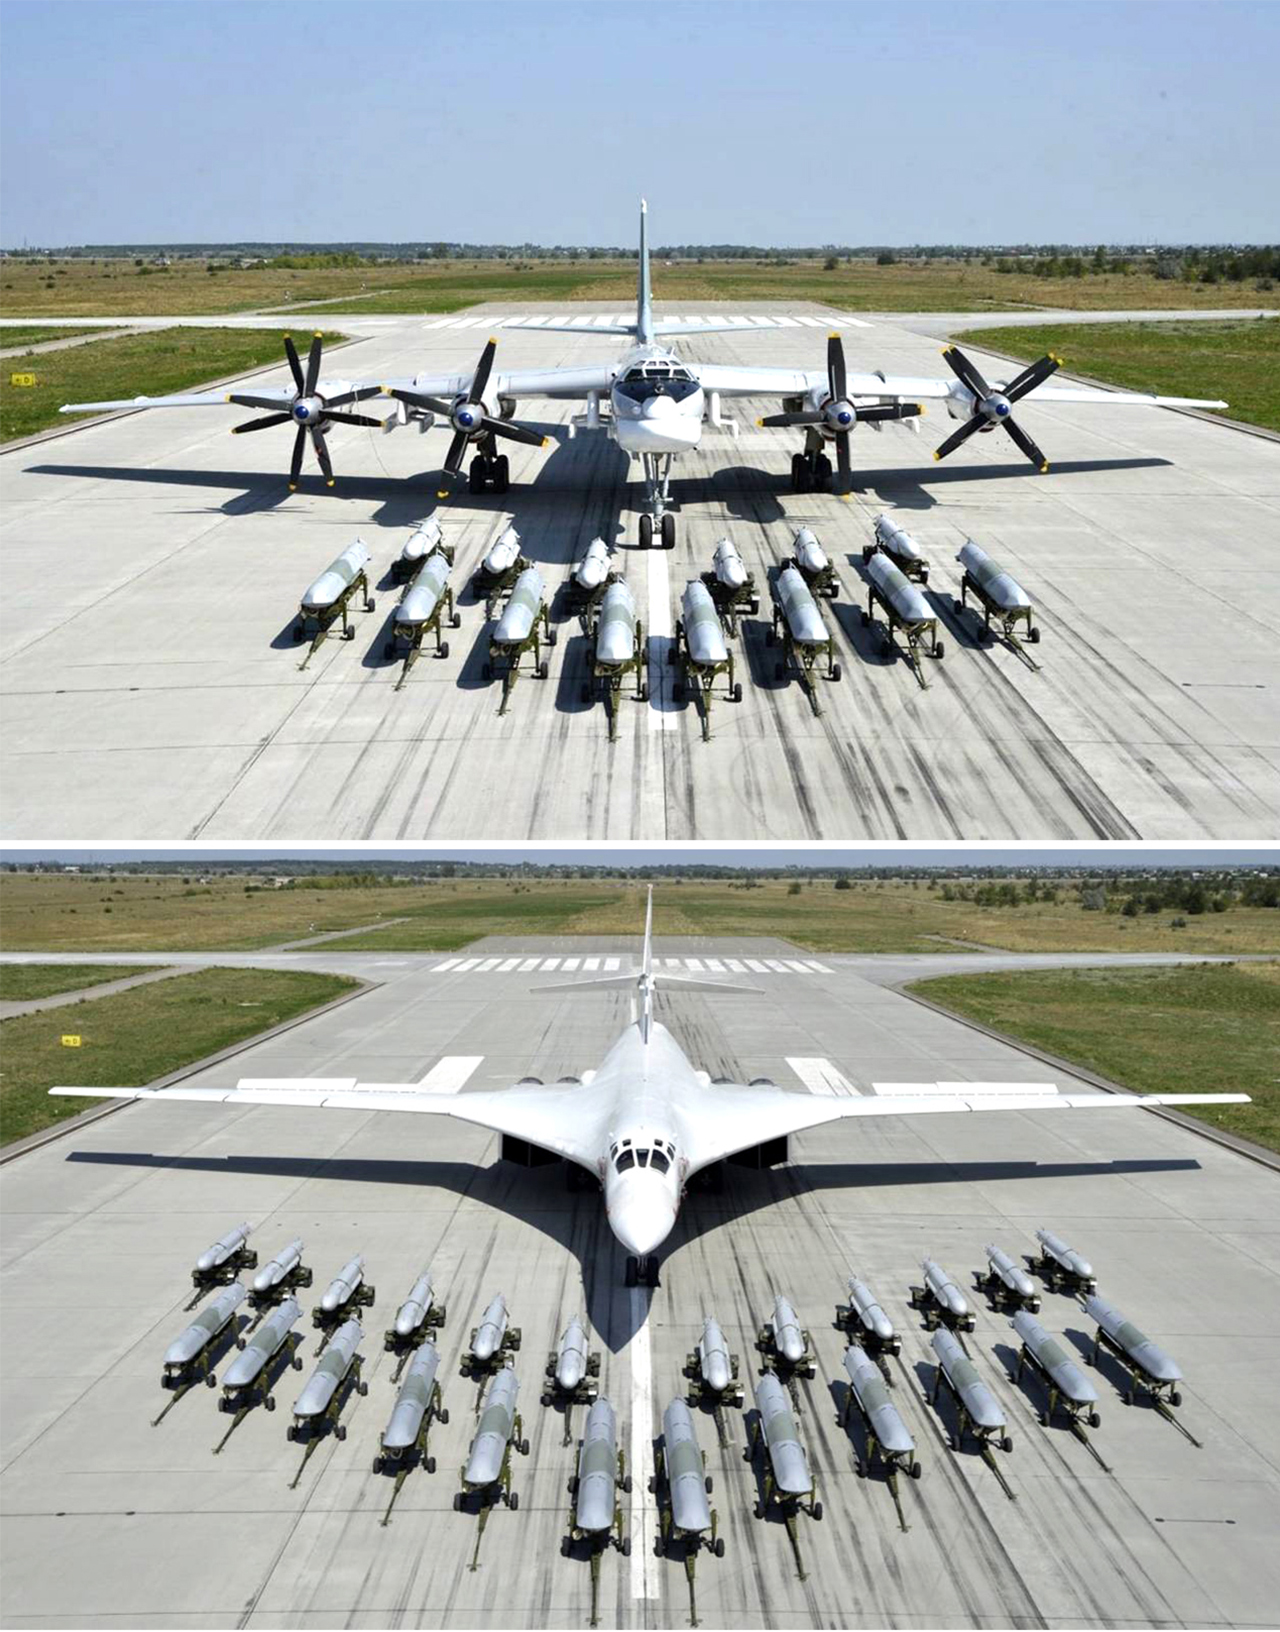 그림 7. 2020년 러시아 국방부가 공개한 Tu95 폭격기와 Tu160 폭격기와 X-555 순항미슬과 X-101 순항미슬. 이 때 공개된 사진에서는 Tu-22M3/5 폭격기는 다른 무장 상태를 공개했지만 X-555 순항미슬과 X-101 순항미슬 역시 탑재 및 운용이 가능하다.